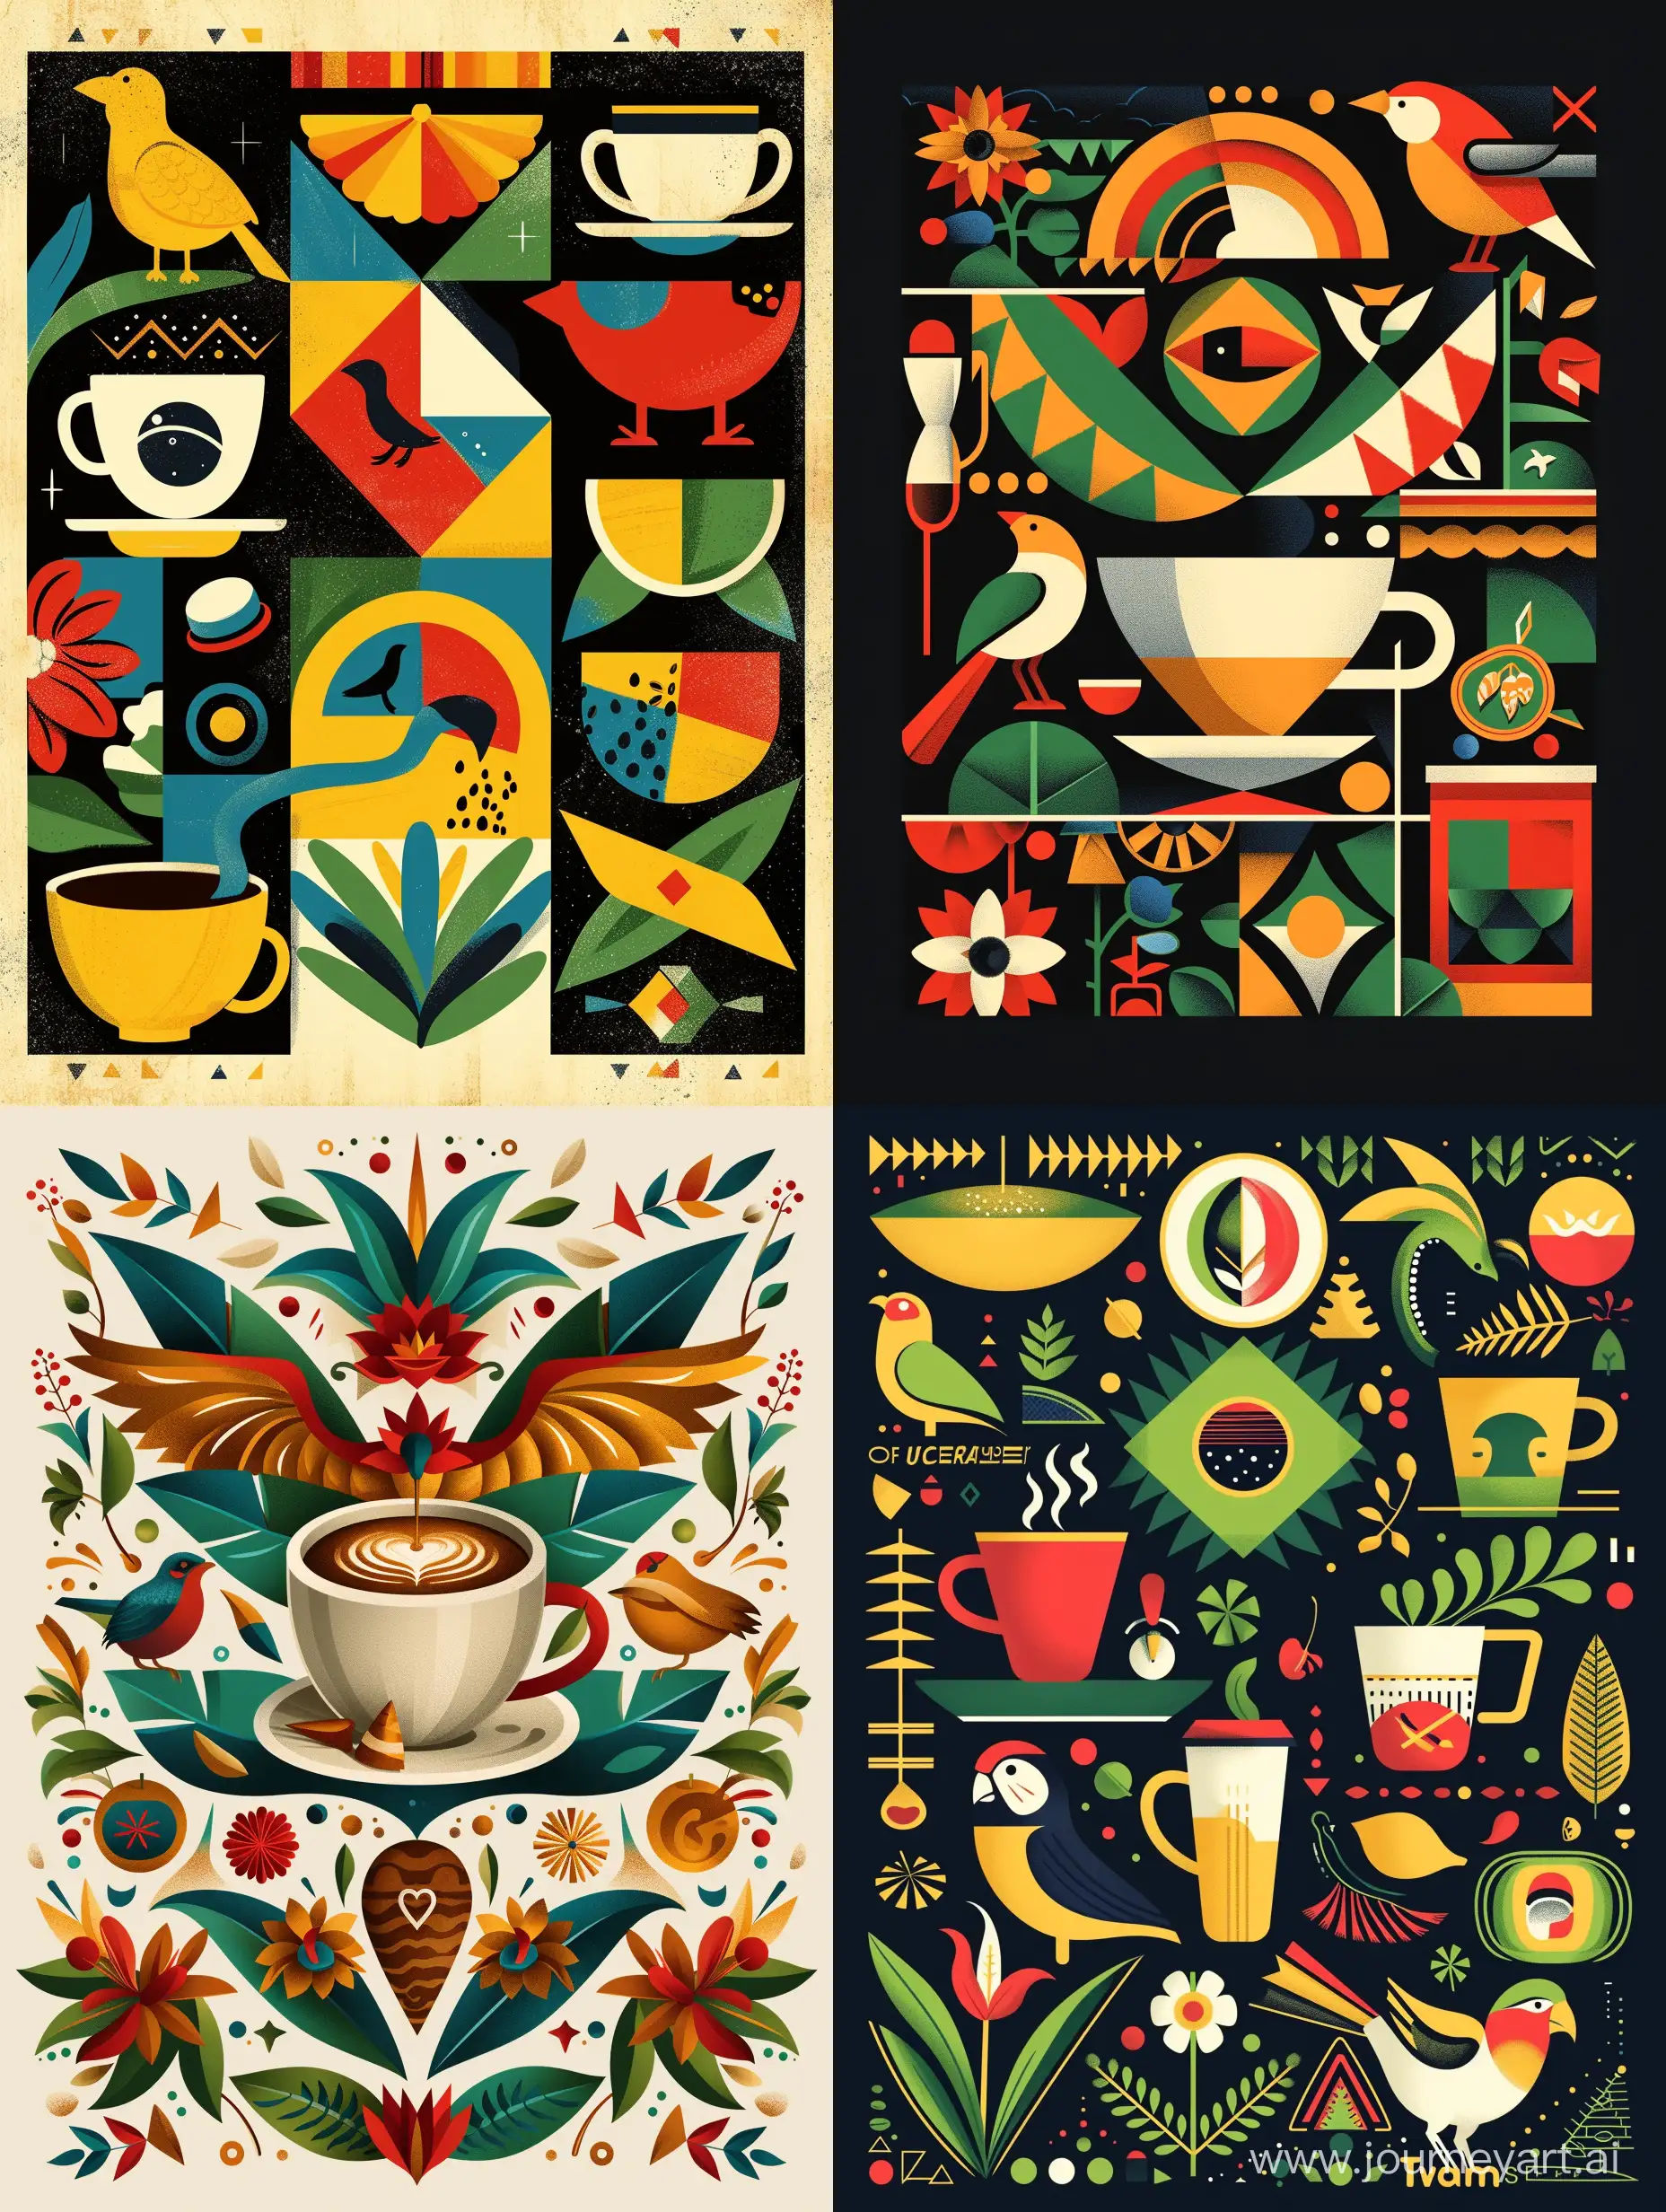 Геометрический орнамент в стиле современная абстракция  кофе, символы Бразилии, природа, птицы и животные Бразилии, достопримечательности Бразилии